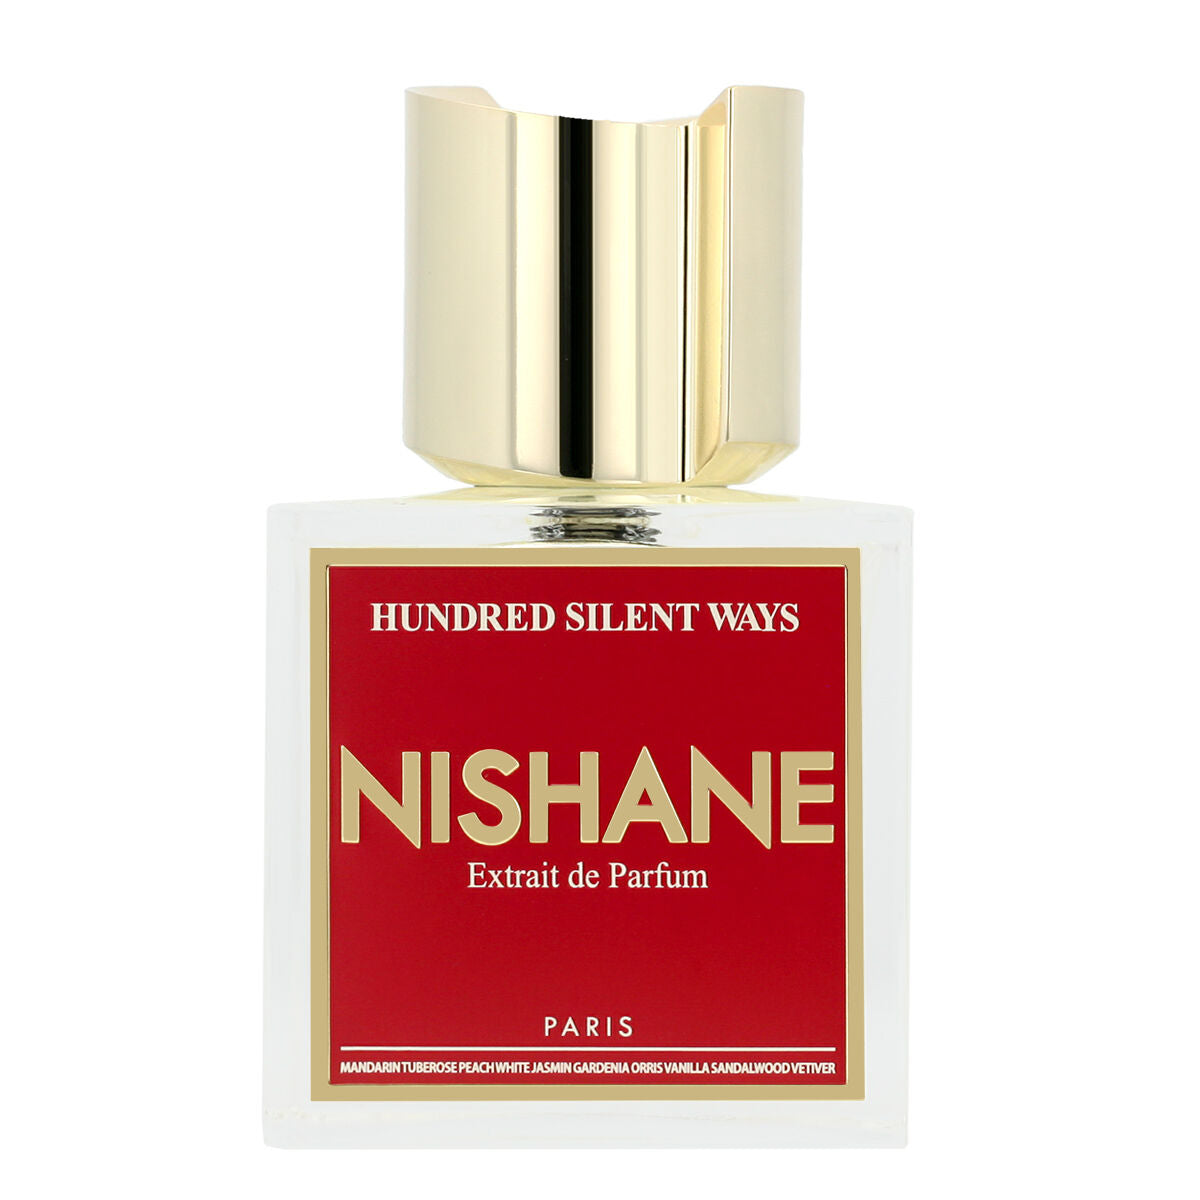 Perfume Unisex Nishane 100 ml Hundred Silent Ways